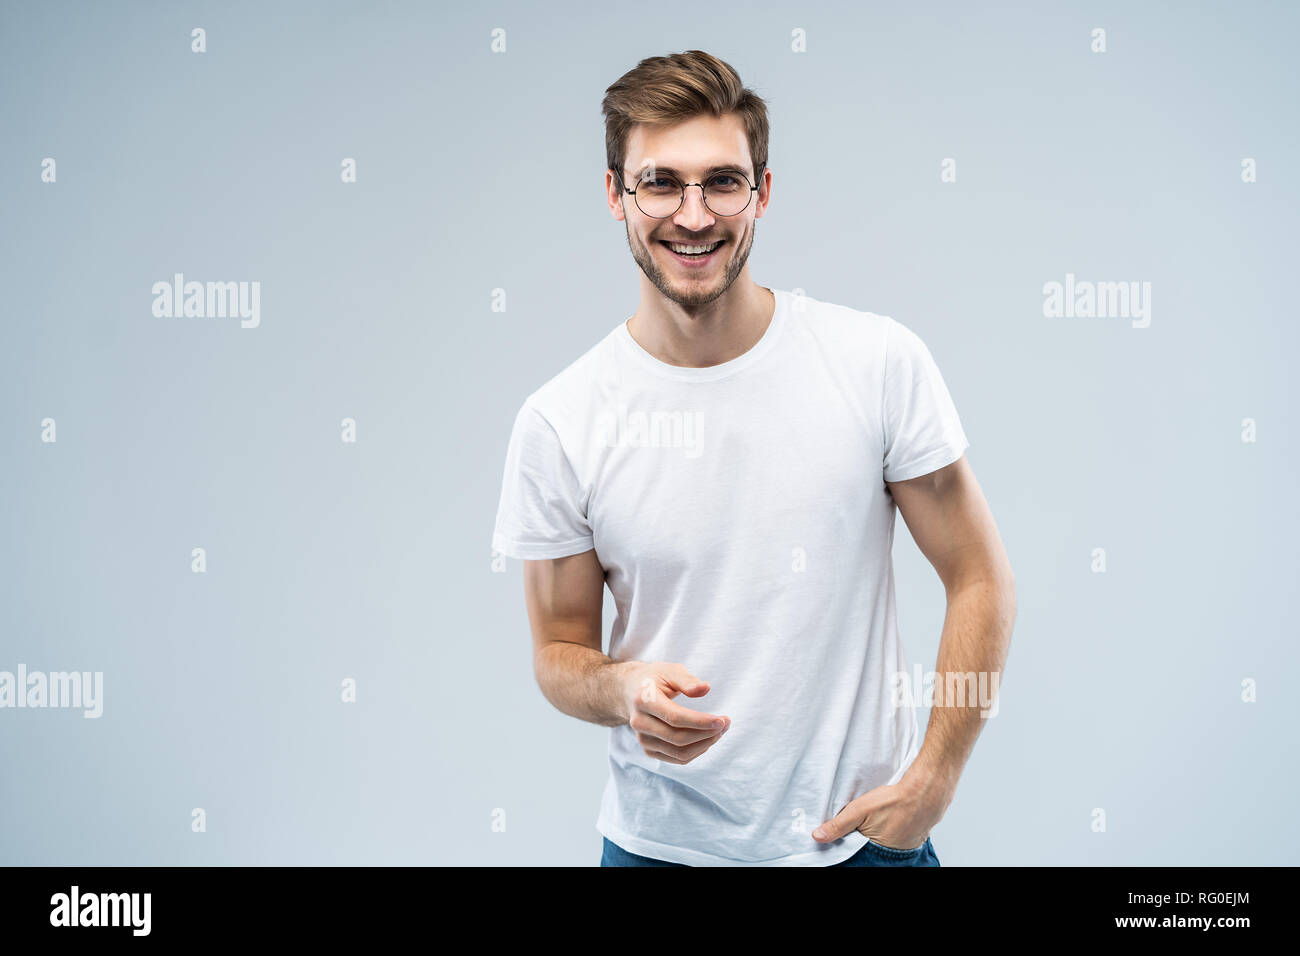 Portrait de beau jeune homme avec sourire rayonnant sur fond gris. Banque D'Images